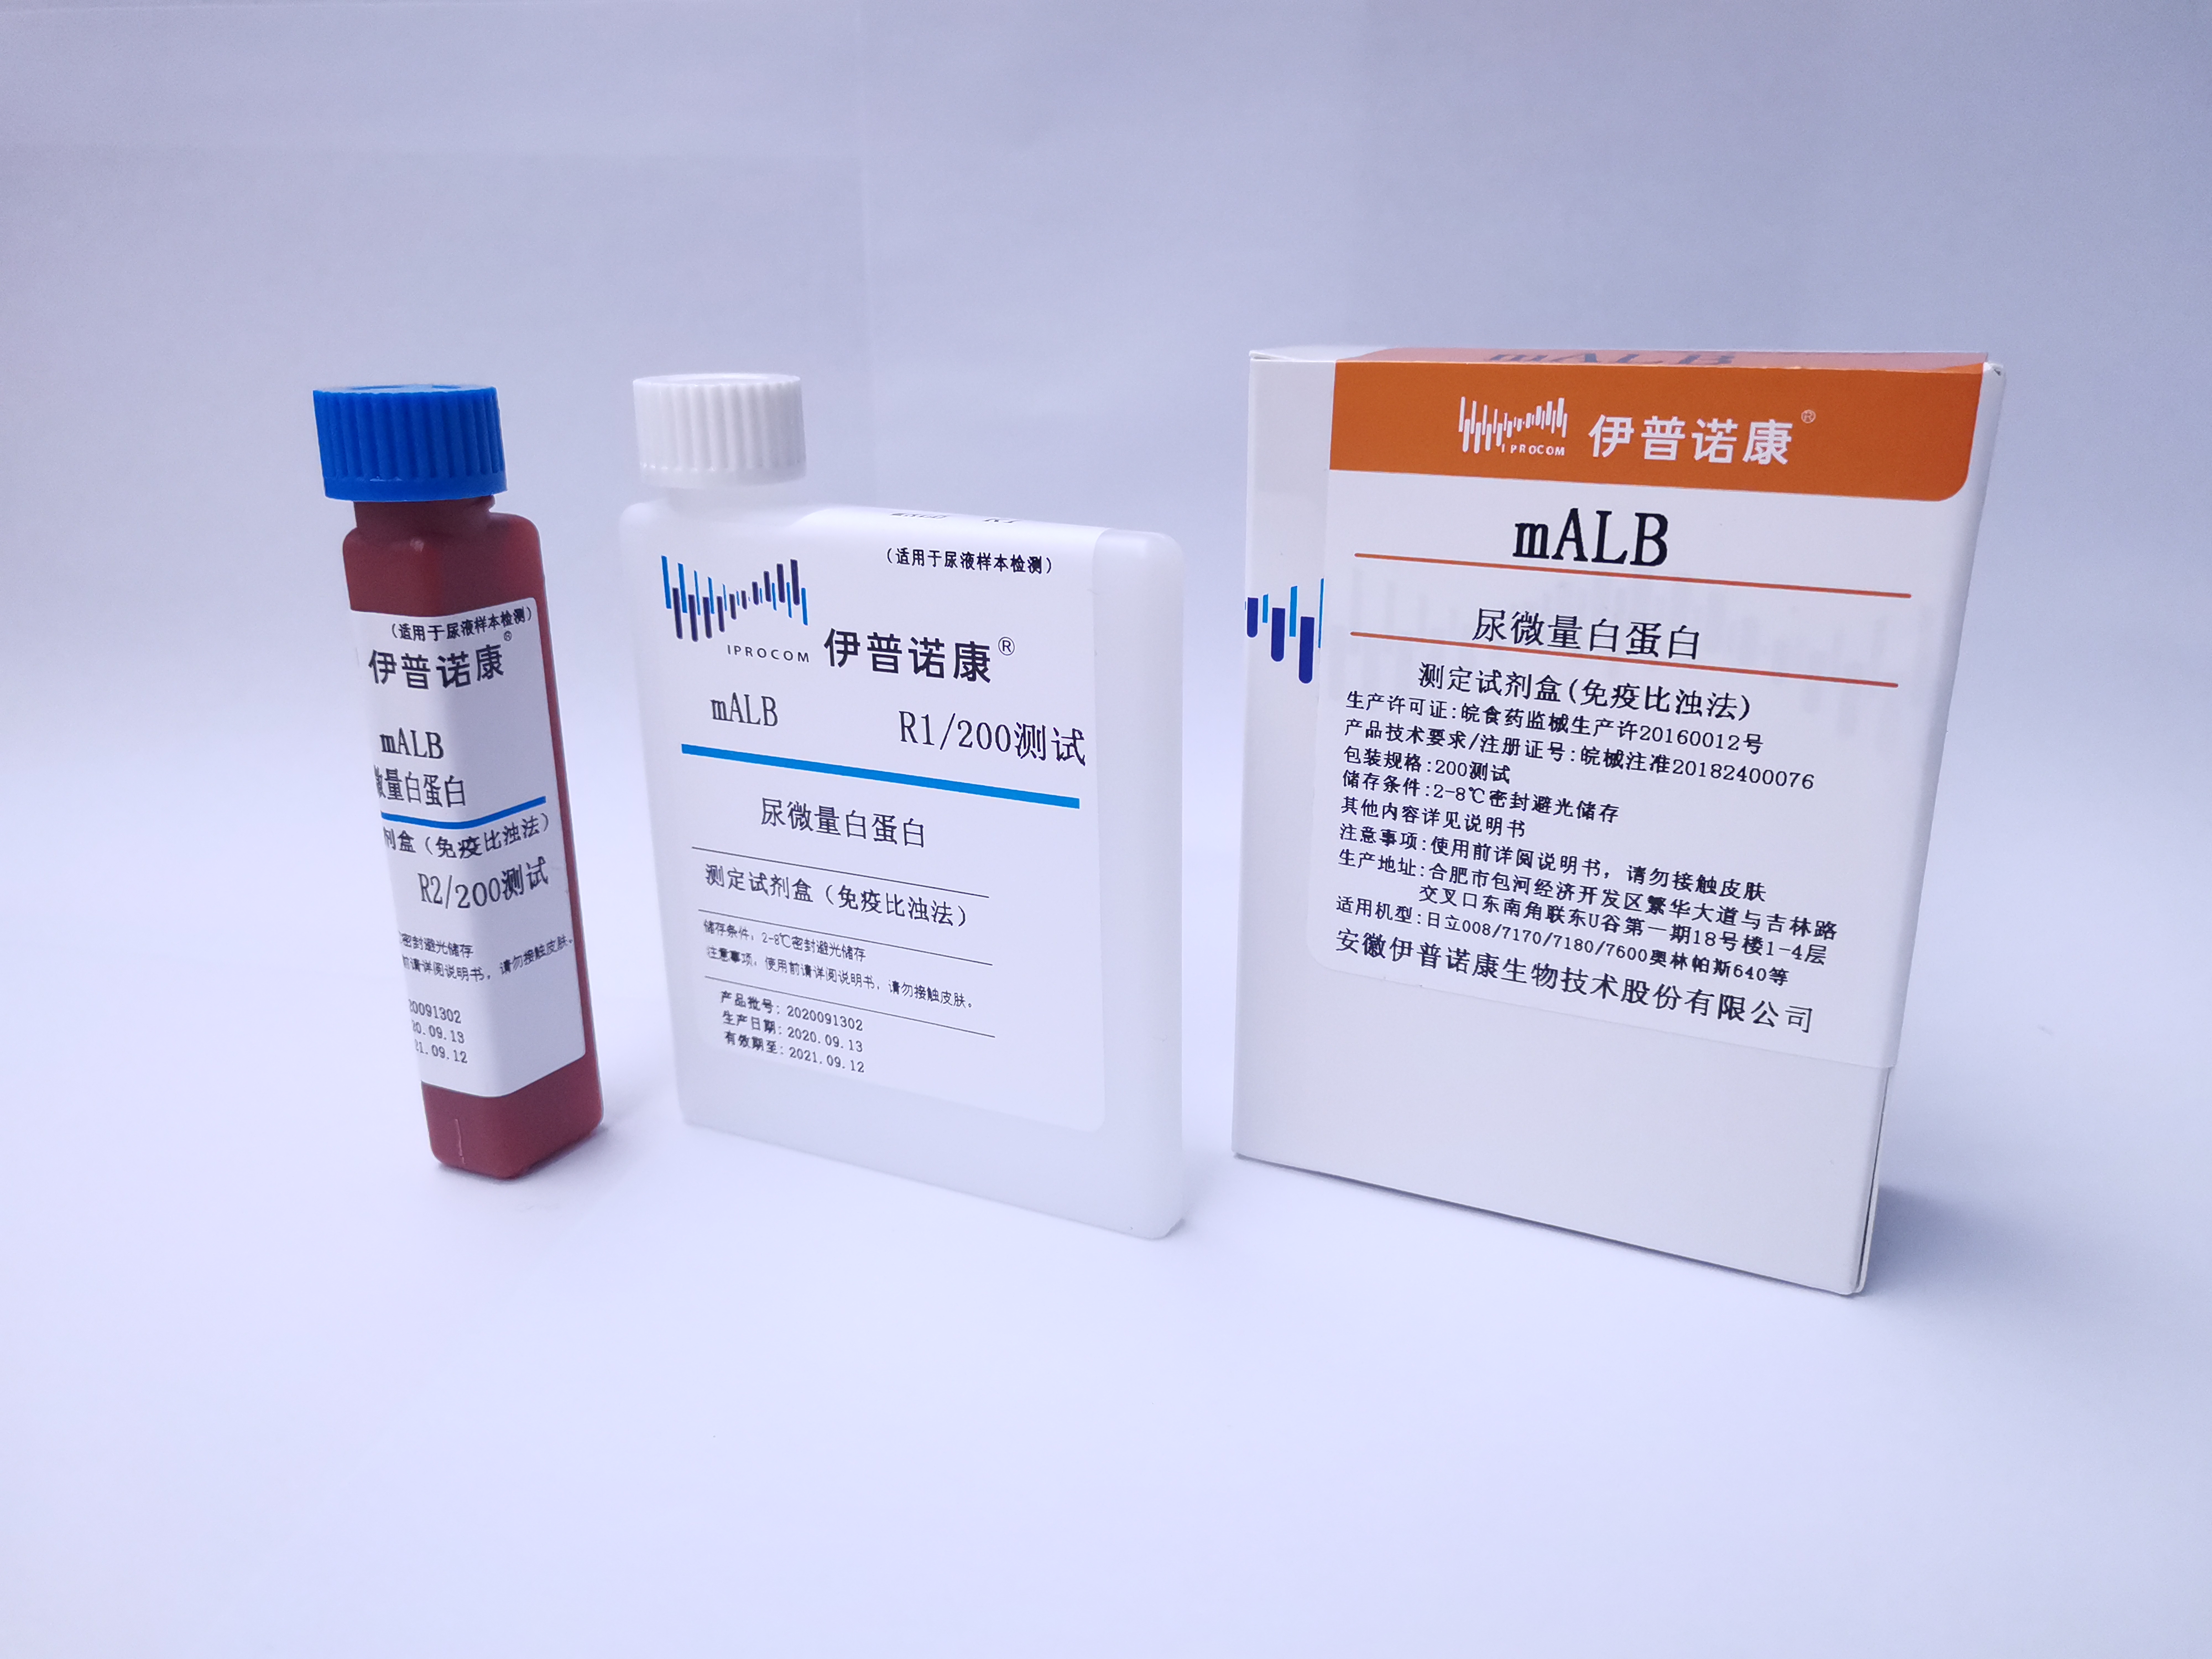 【伊普诺康】尿微量白蛋白测定试剂盒(免疫比浊法)